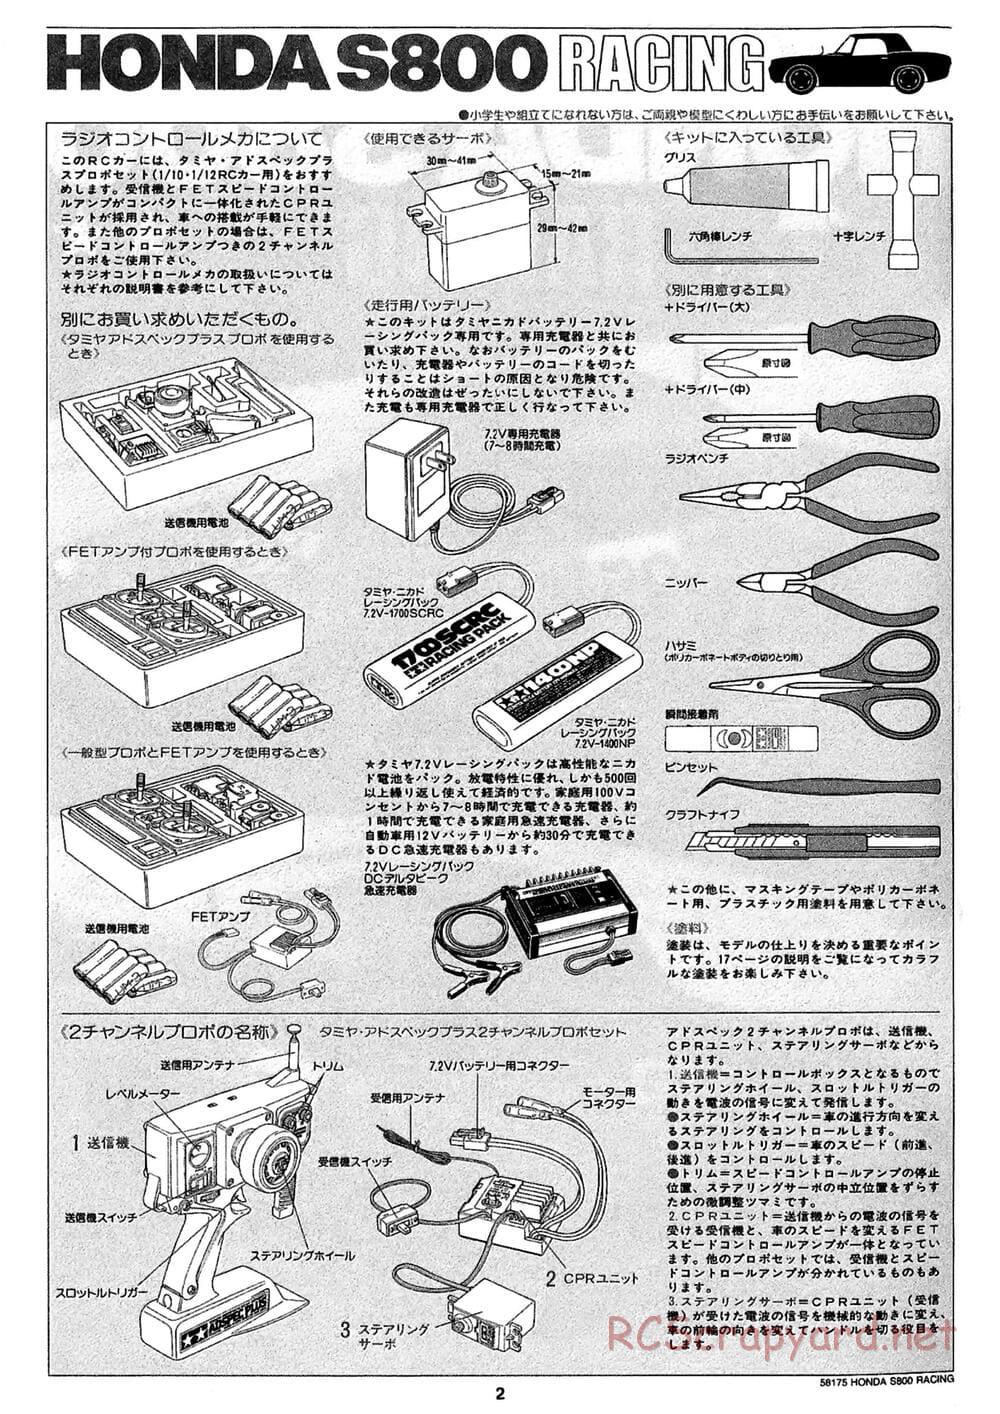 Tamiya - Honda S800 Racing - M02 Chassis - Manual - Page 2